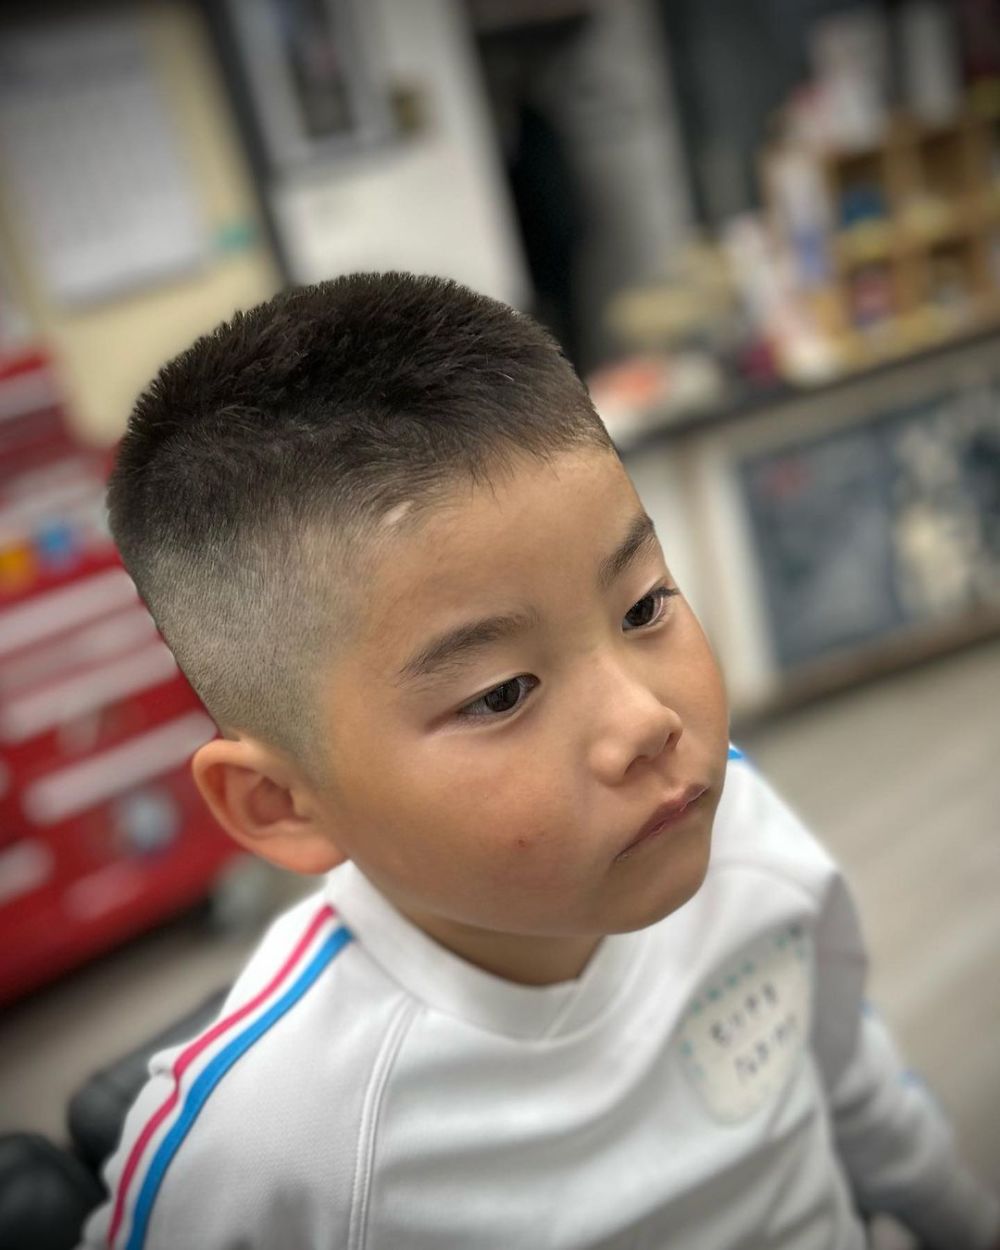 韩版小男孩发型图片图片